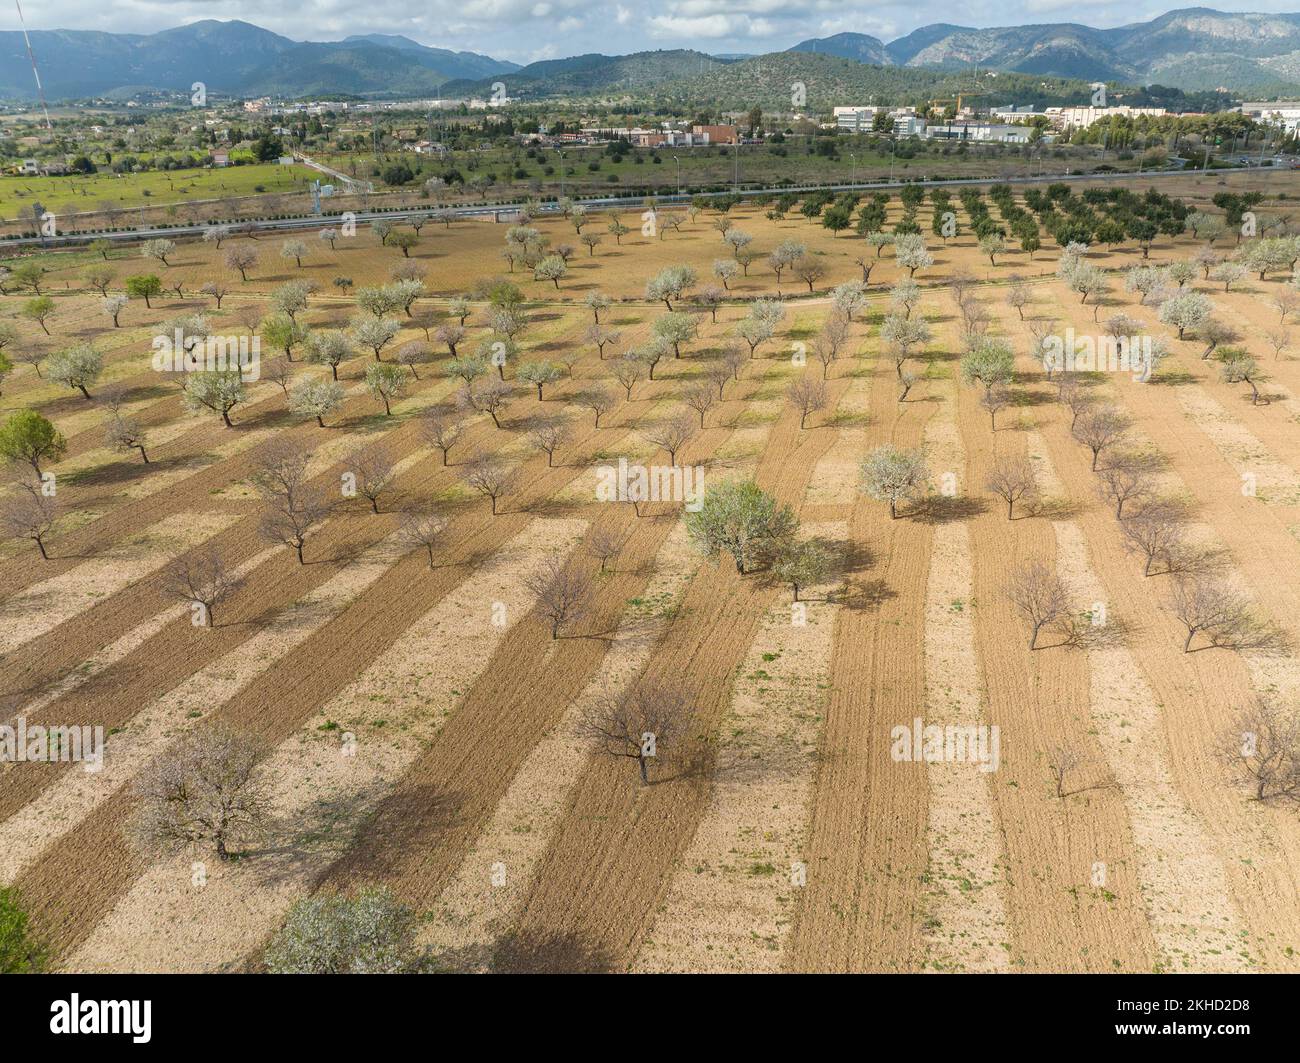 Veduta aerea, fiore di mandorle, piantagione con alberi di mandorle in fiore, vicino a Son Sardina, regione di Palma, Maiorca, Isole Baleari, Spagna, Europa Foto Stock